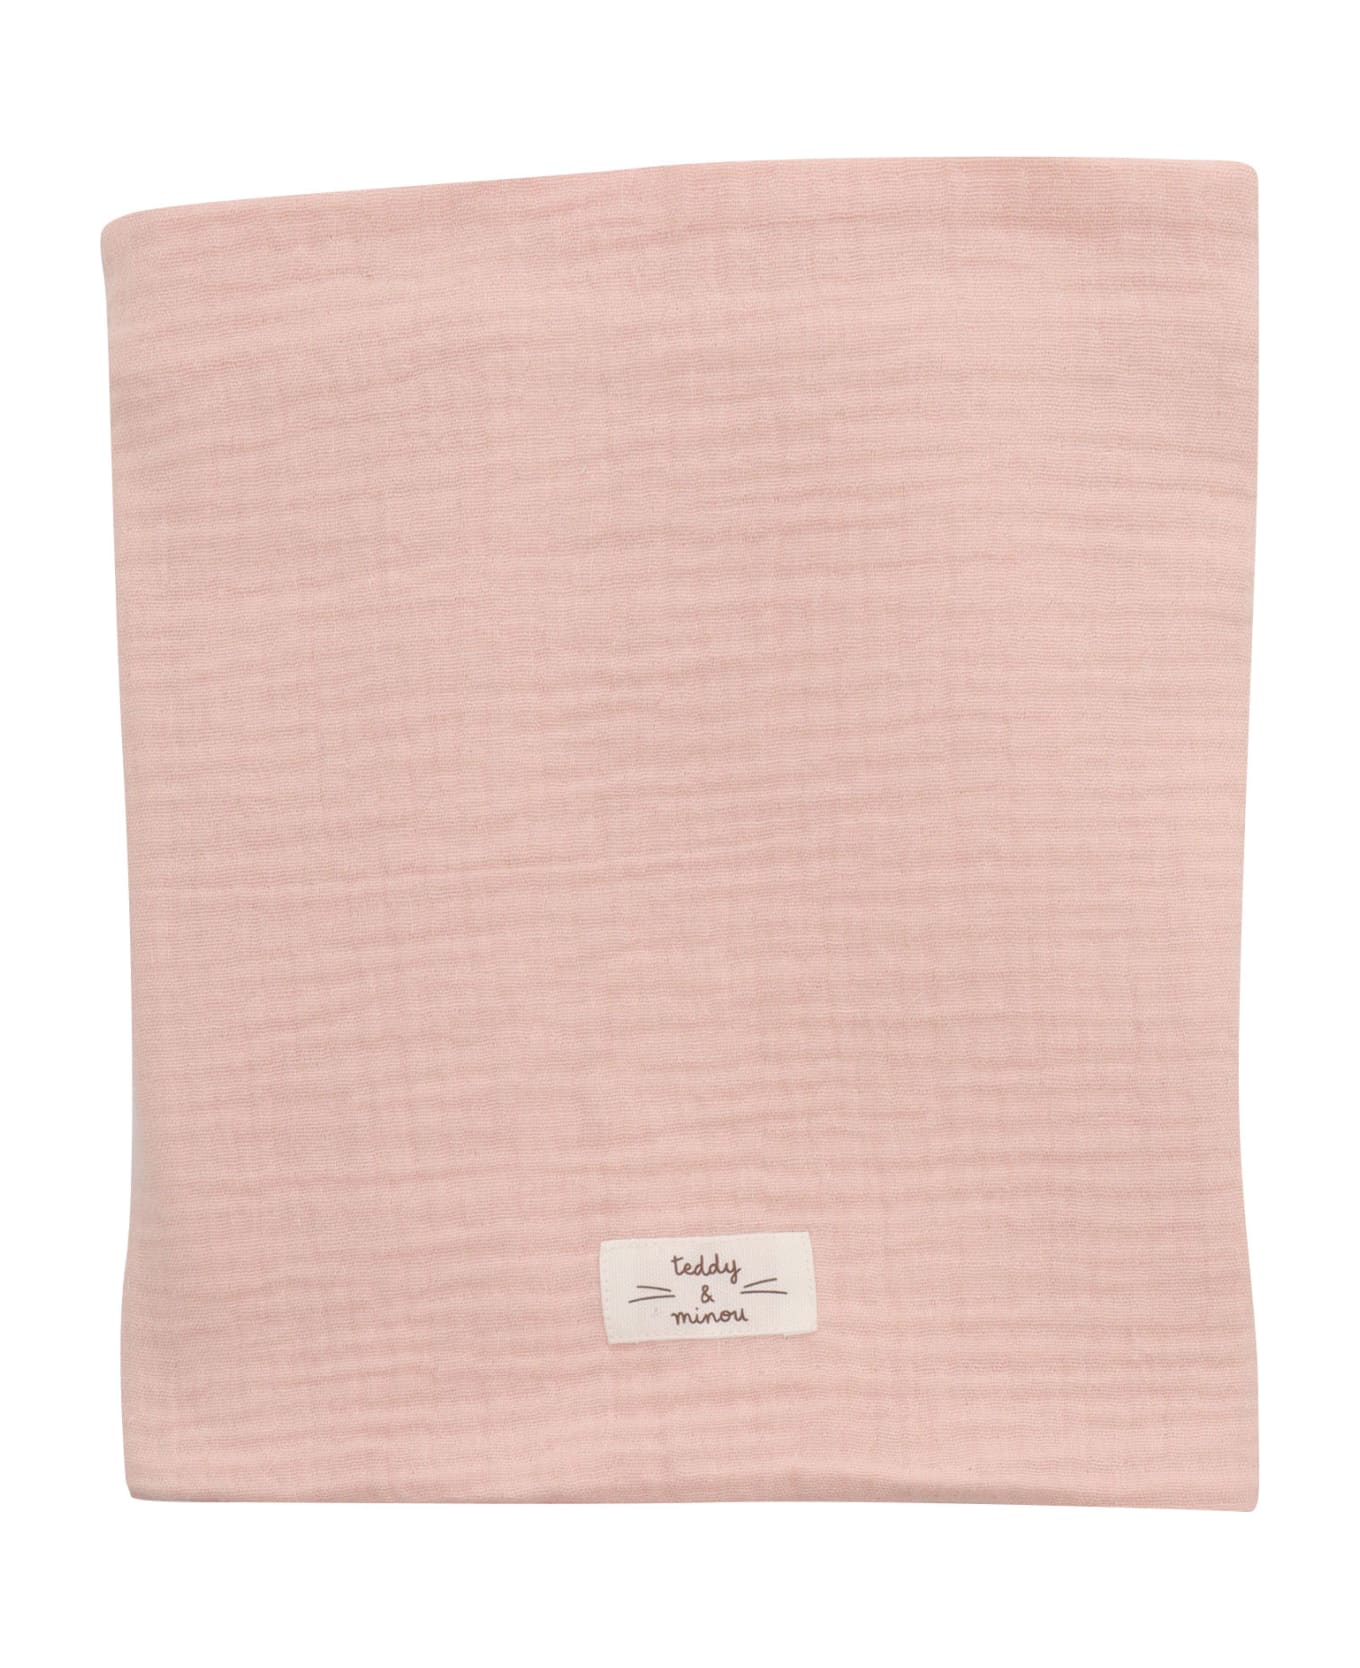 Teddy & Minou Pink Crib Blanket - PINK